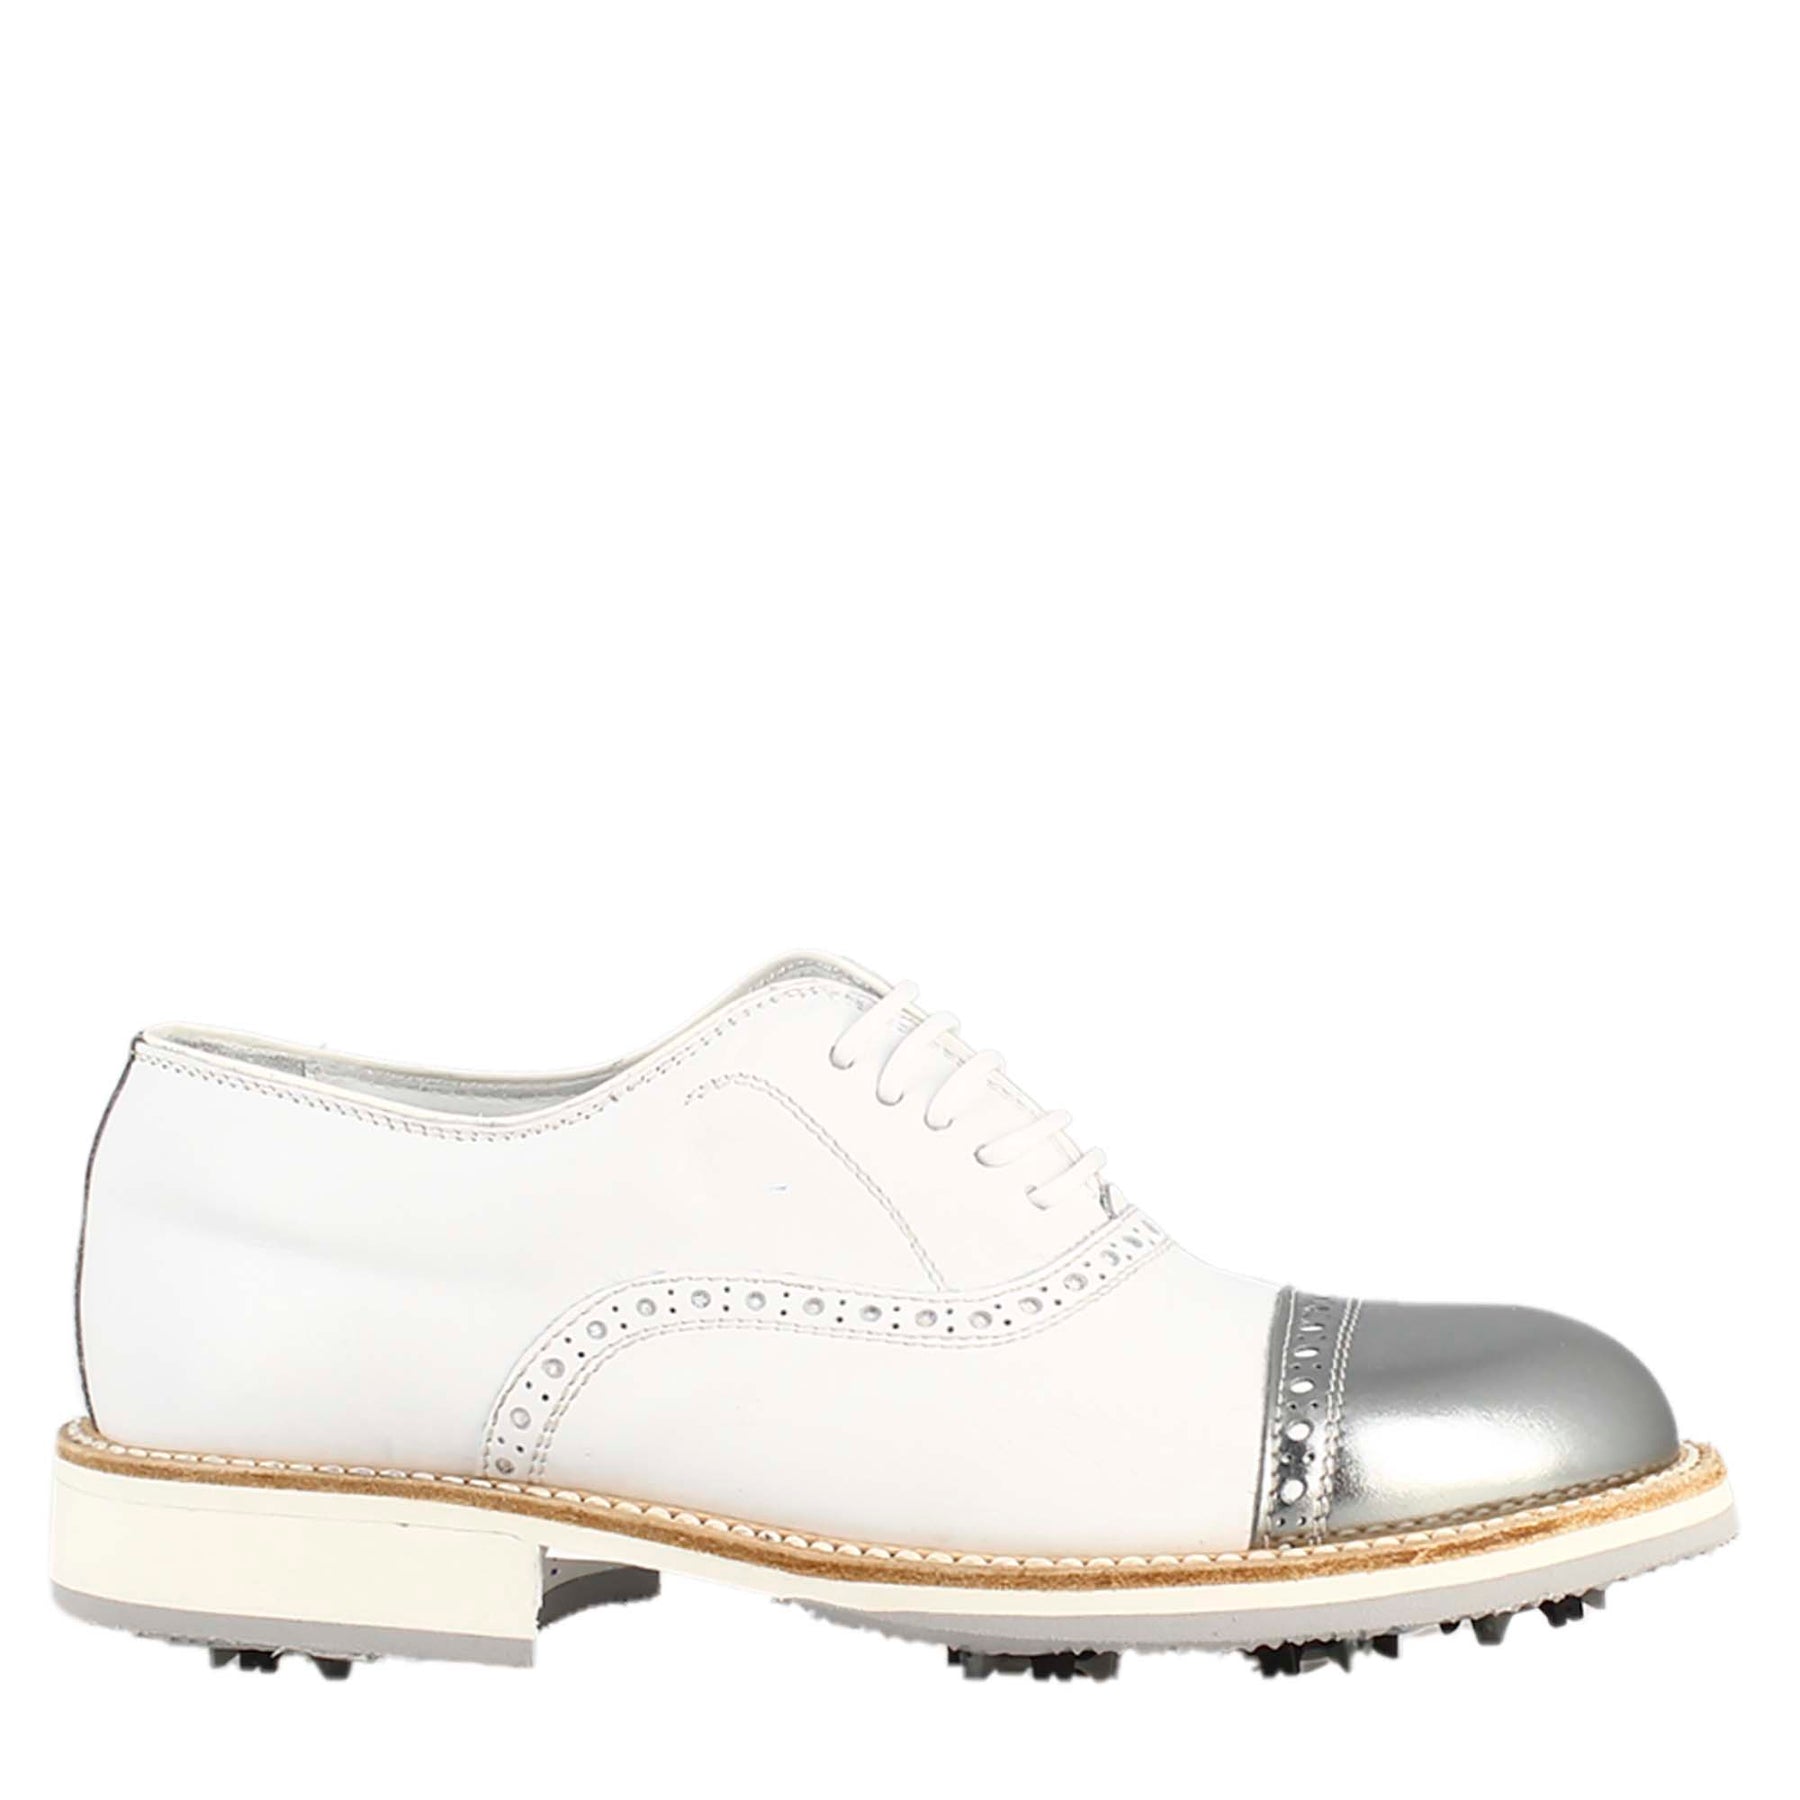 Handgefertigte Damen-Golfschuhe aus weißem Leder mit silbernen Details